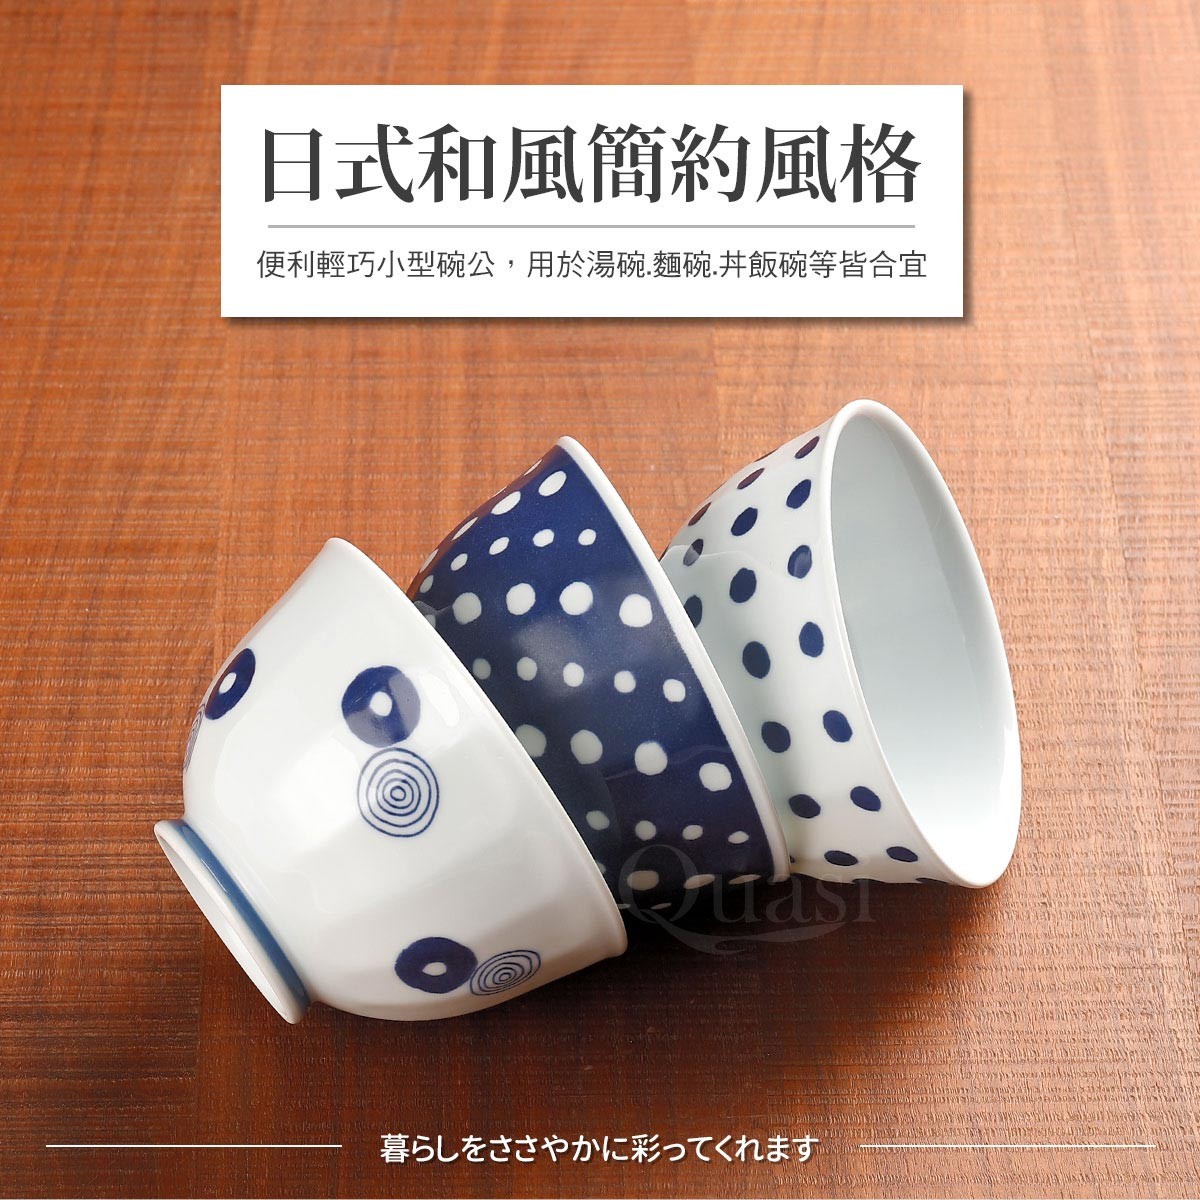 SAIKAI 西海輕量波佐見燒藍丸紋湯麵碗 3件組，來自日本的無鉛陶瓷器物，手工繪製花紋獨特，無鉛釉彩瓷質通透。